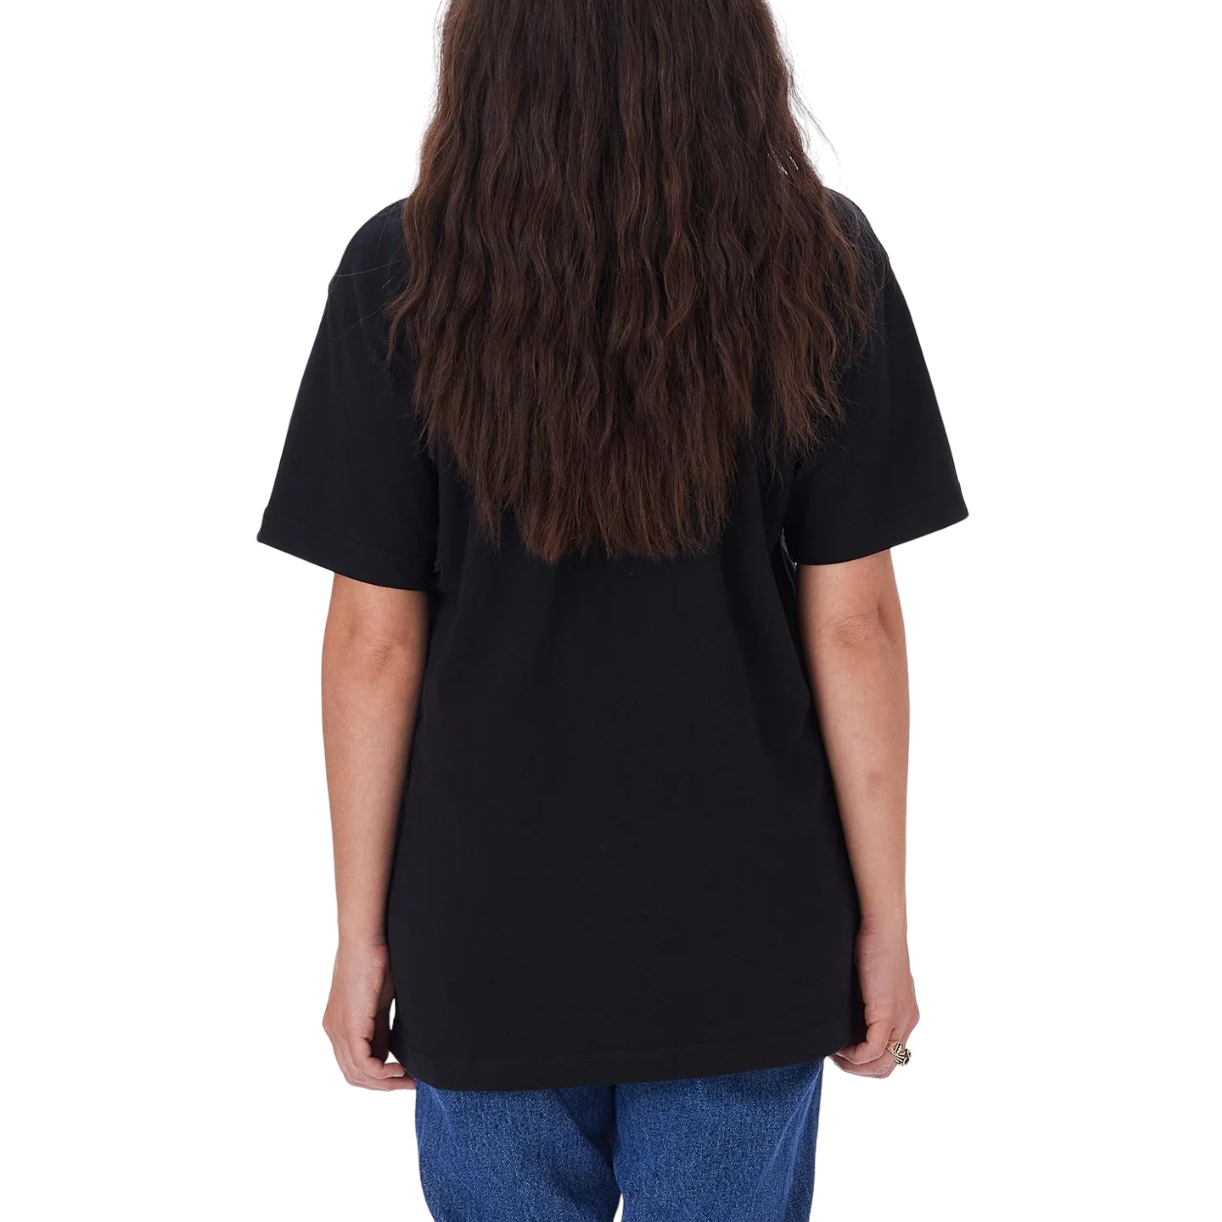 Obey maglietta da adulto Standard 131080300 nero. Confezione da 2 pezzi